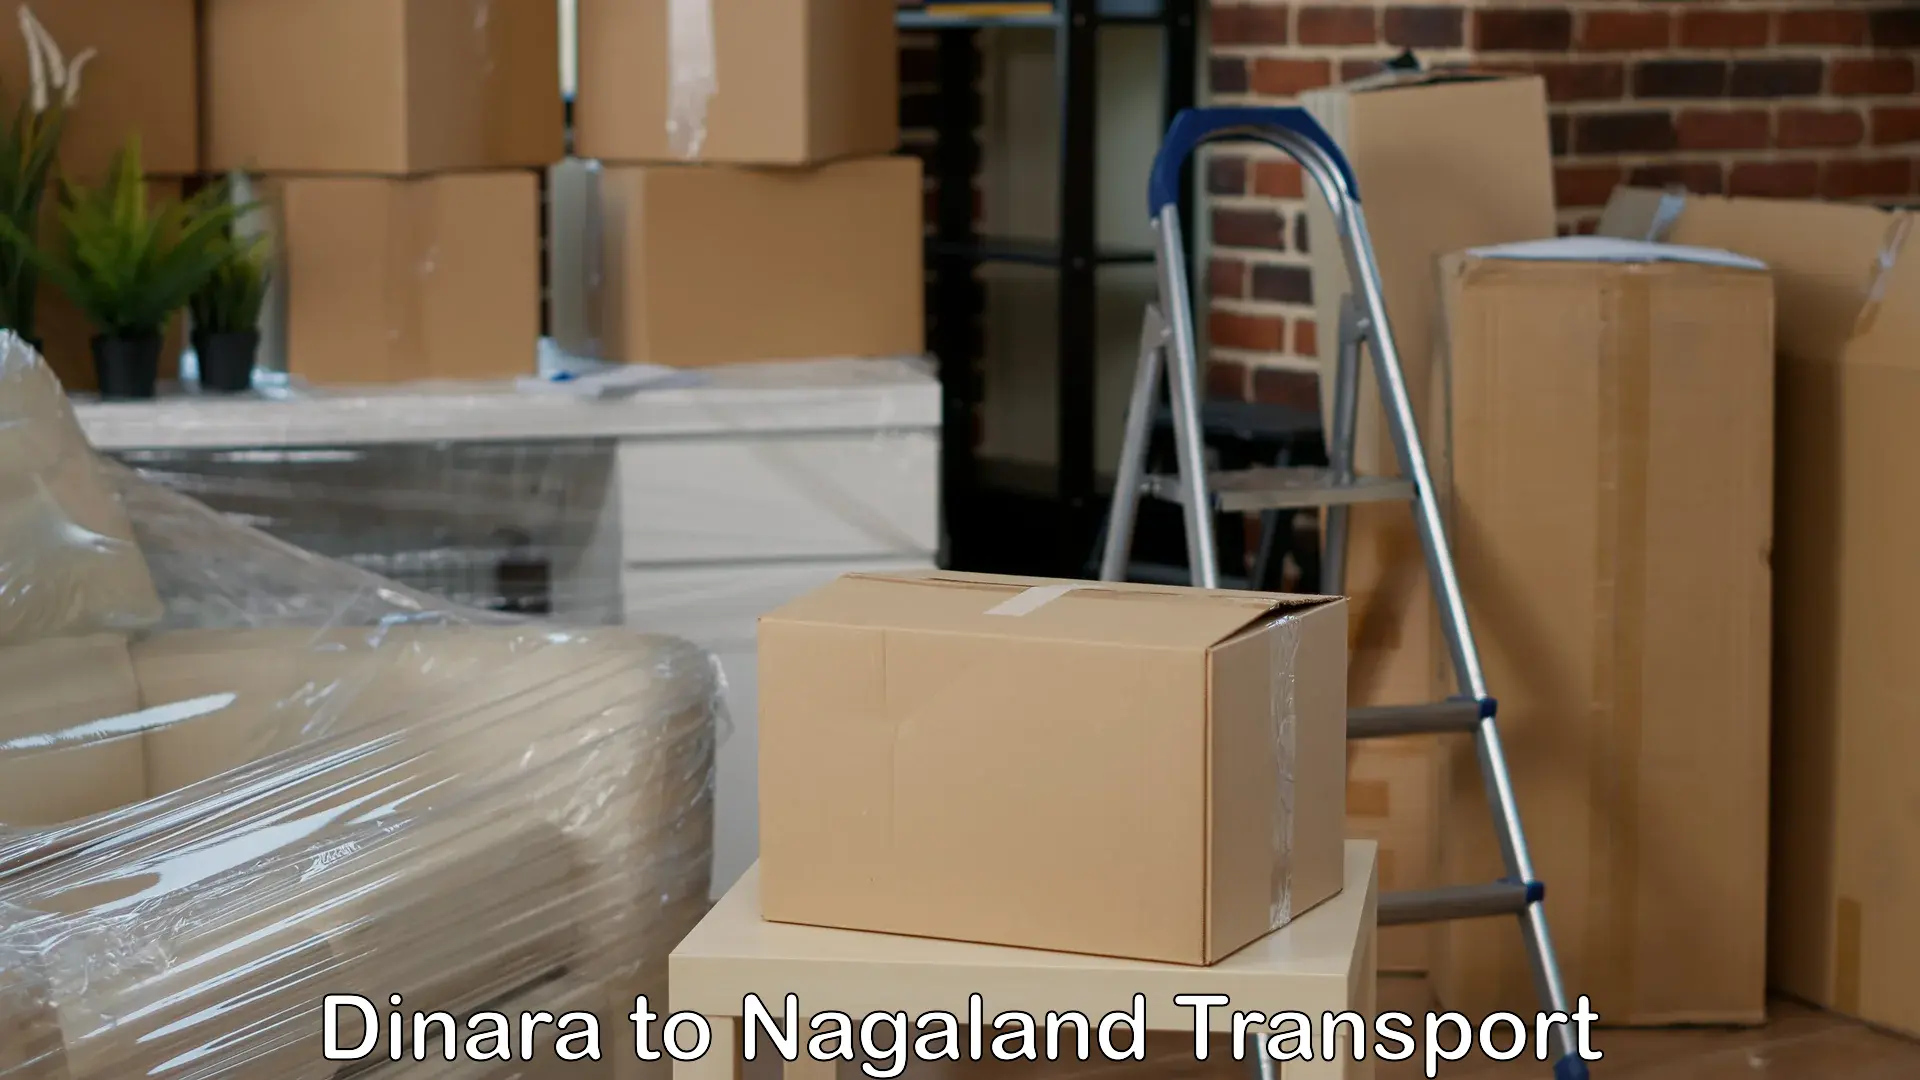 Furniture transport service Dinara to Nagaland